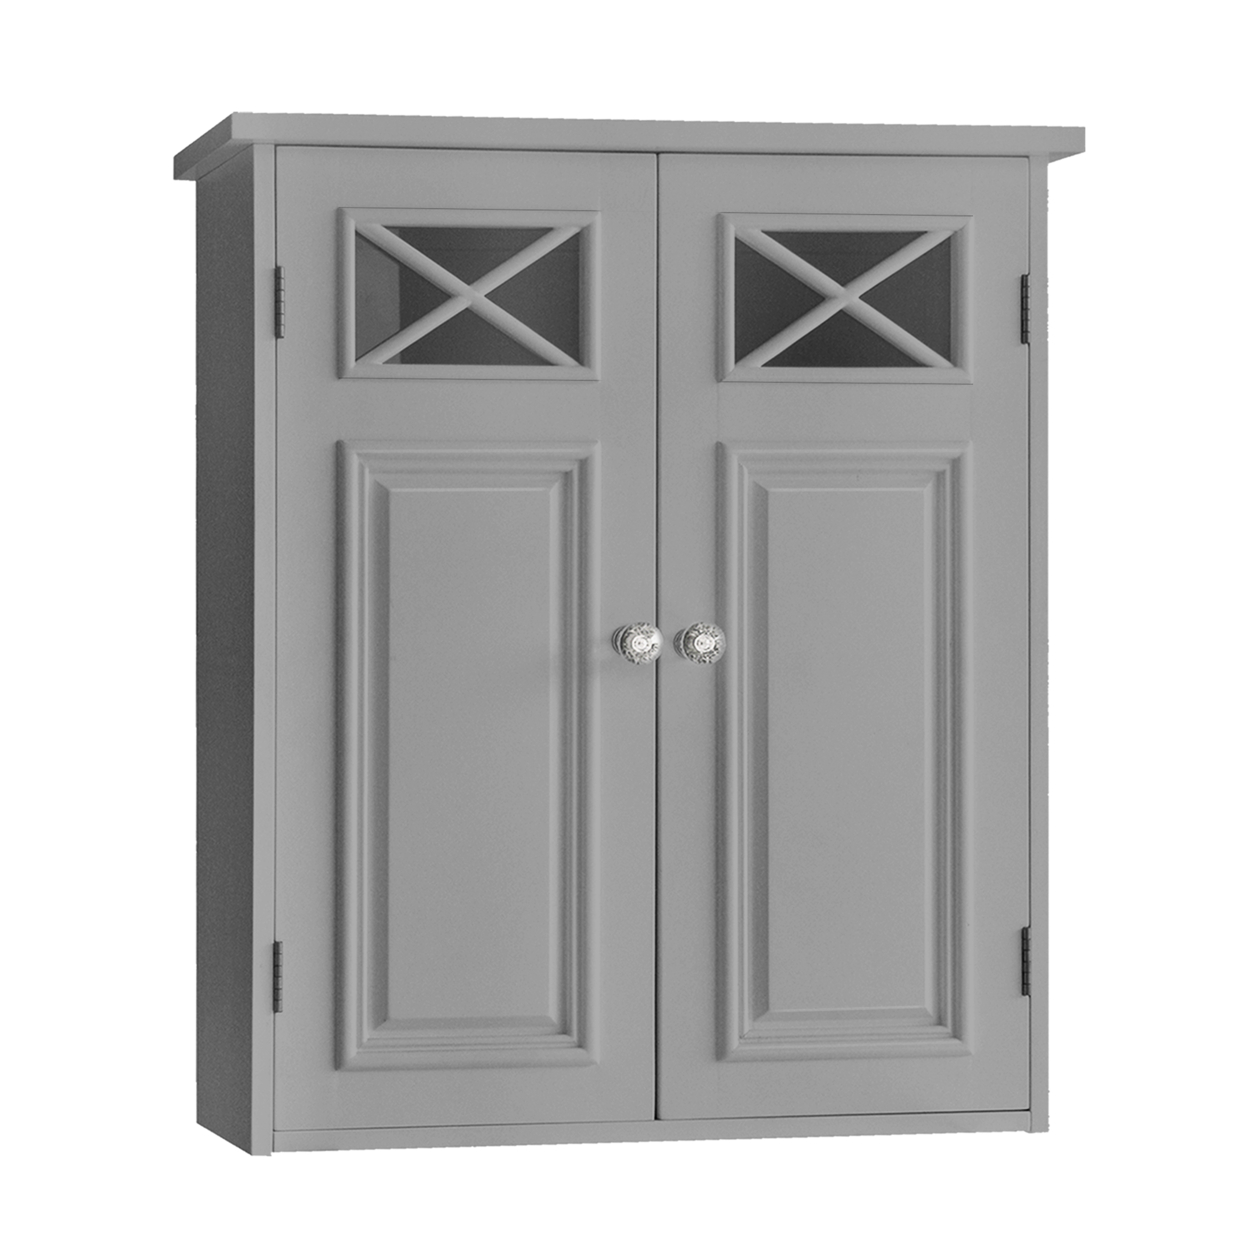 Elegant Home Fashions Bathroom Wall Cabinet Grey EHF-6810G